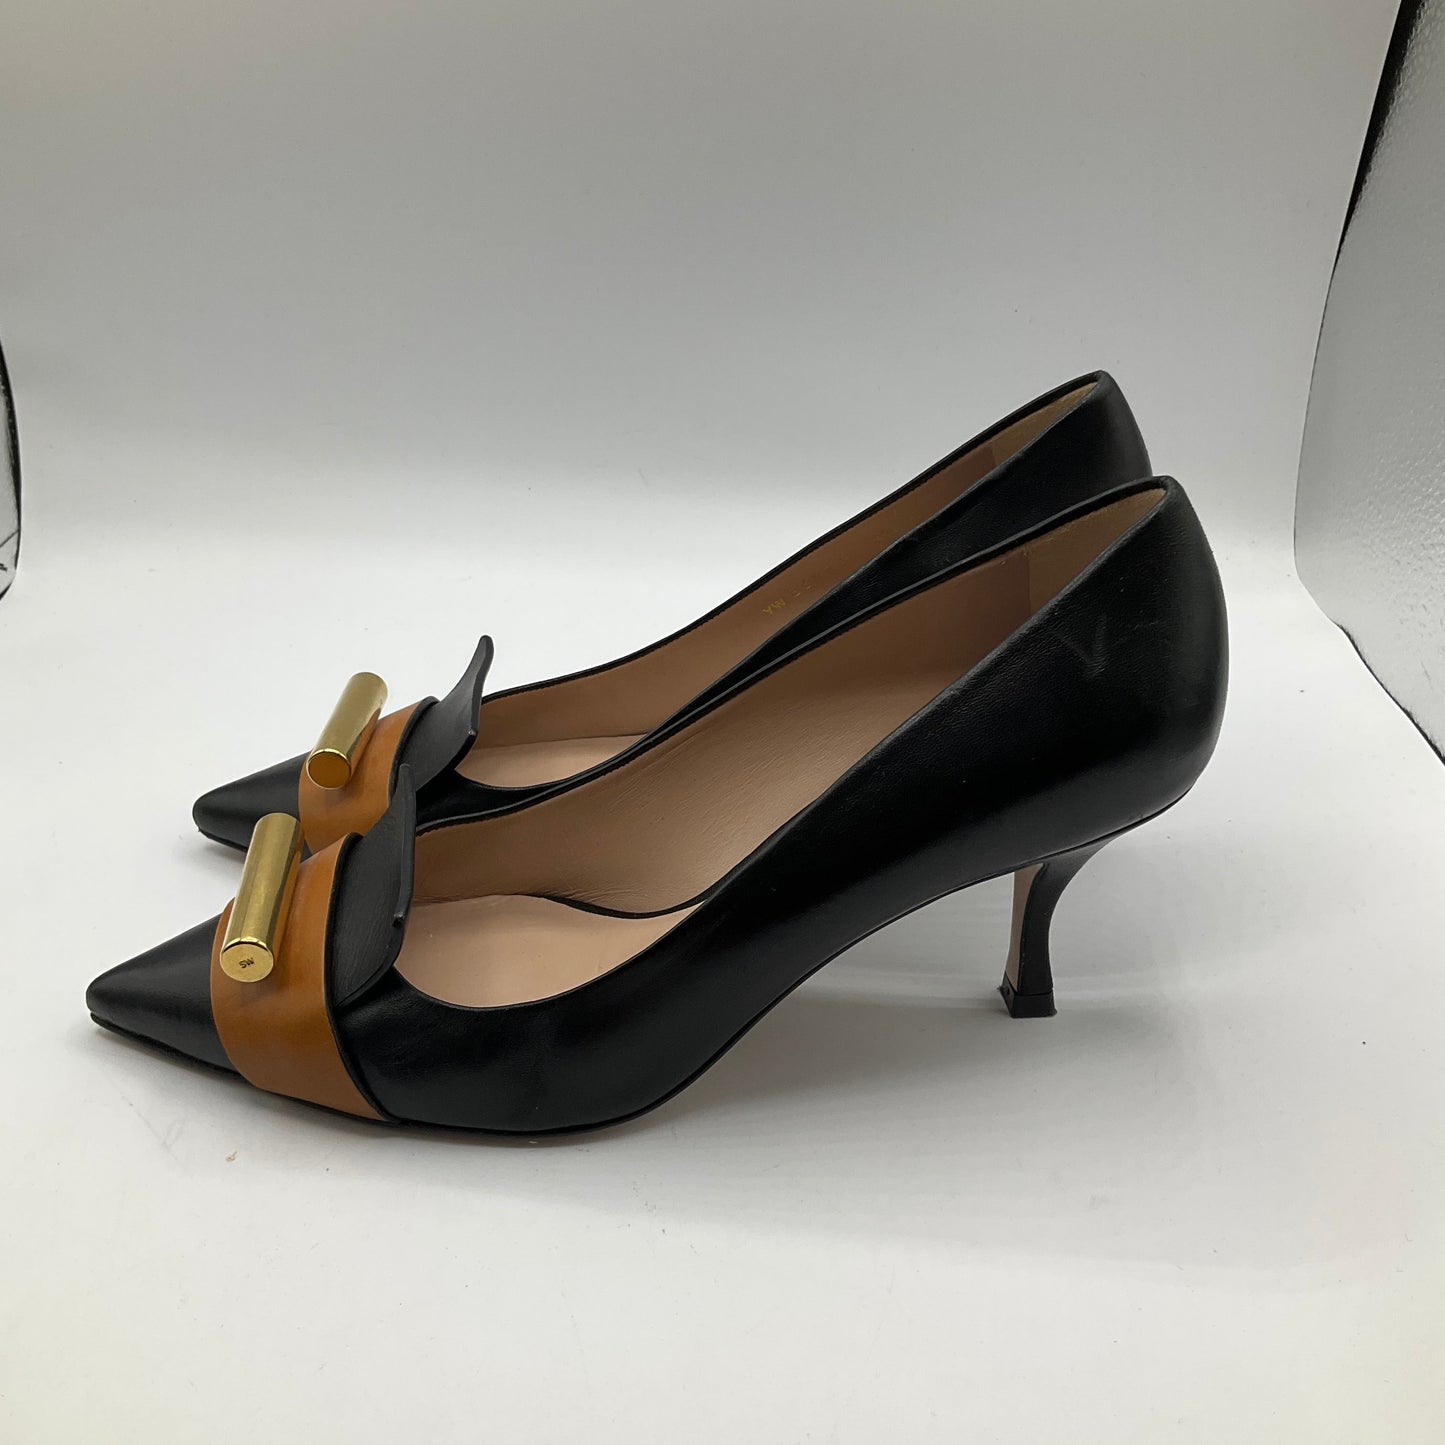 Shoes Heels Kitten By Stuart Weitzman  Size: 8.5